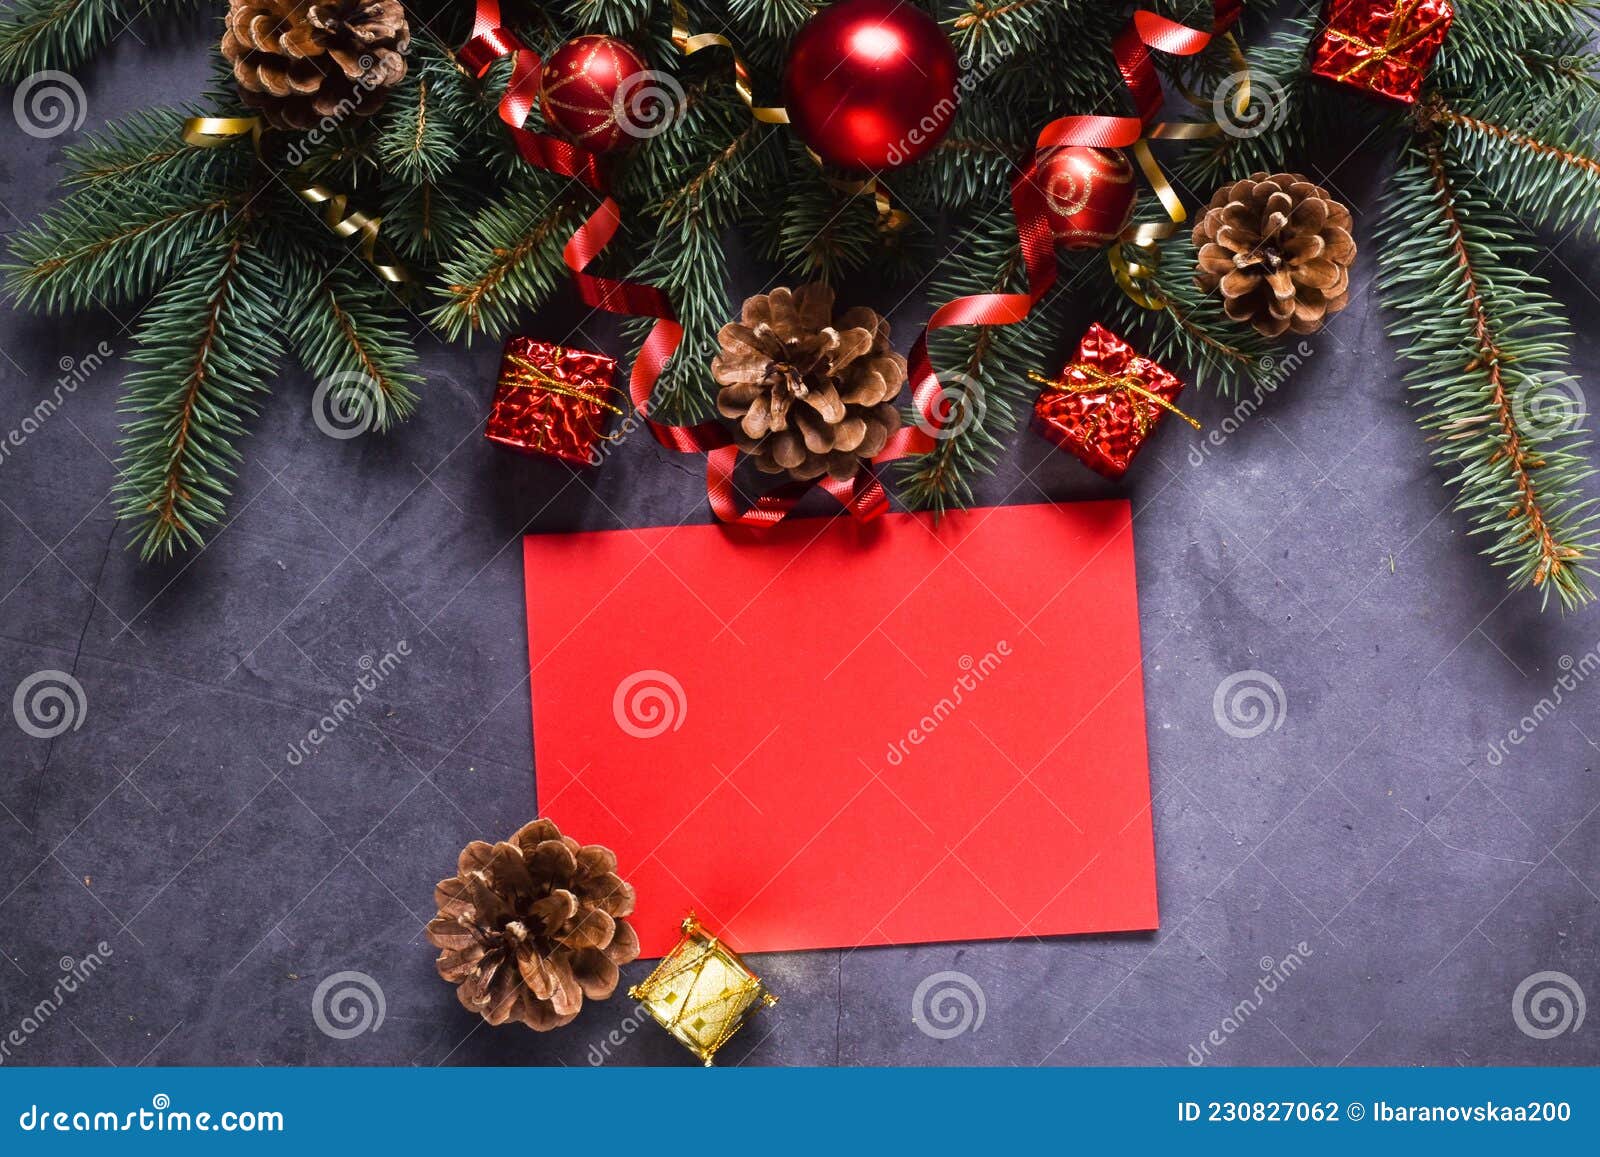 Carte et enveloppe cadeau - Joyeux Noël rouge - Sapin de Noël